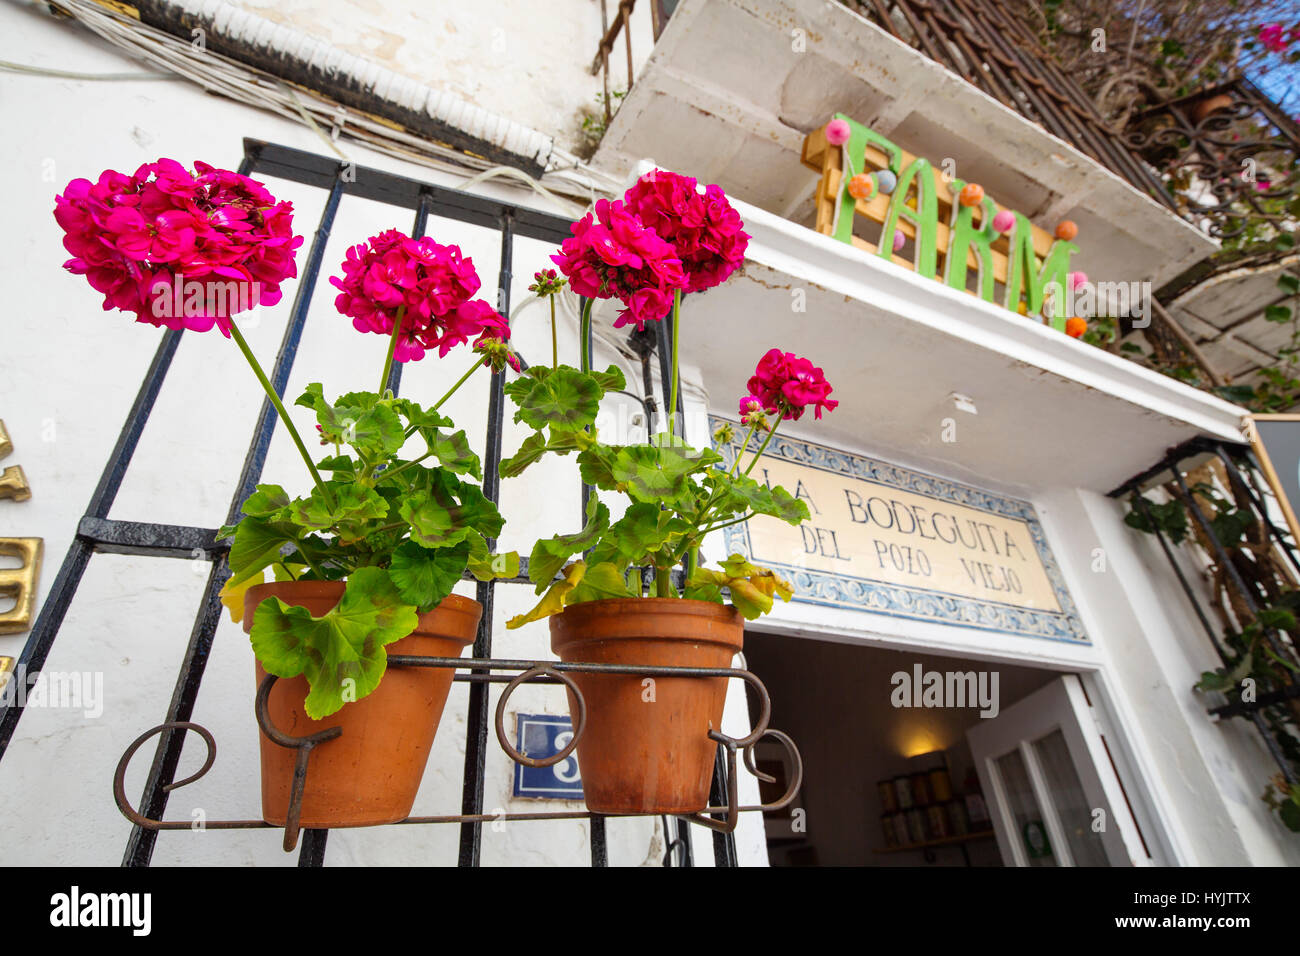 Vaso con fiori nel bar Ristorante La Bodeguita del Pozo Viejo, centro storico, Marbella. Provincia di Malaga Costa del Sol. Andalusia Spagna meridionale Foto Stock